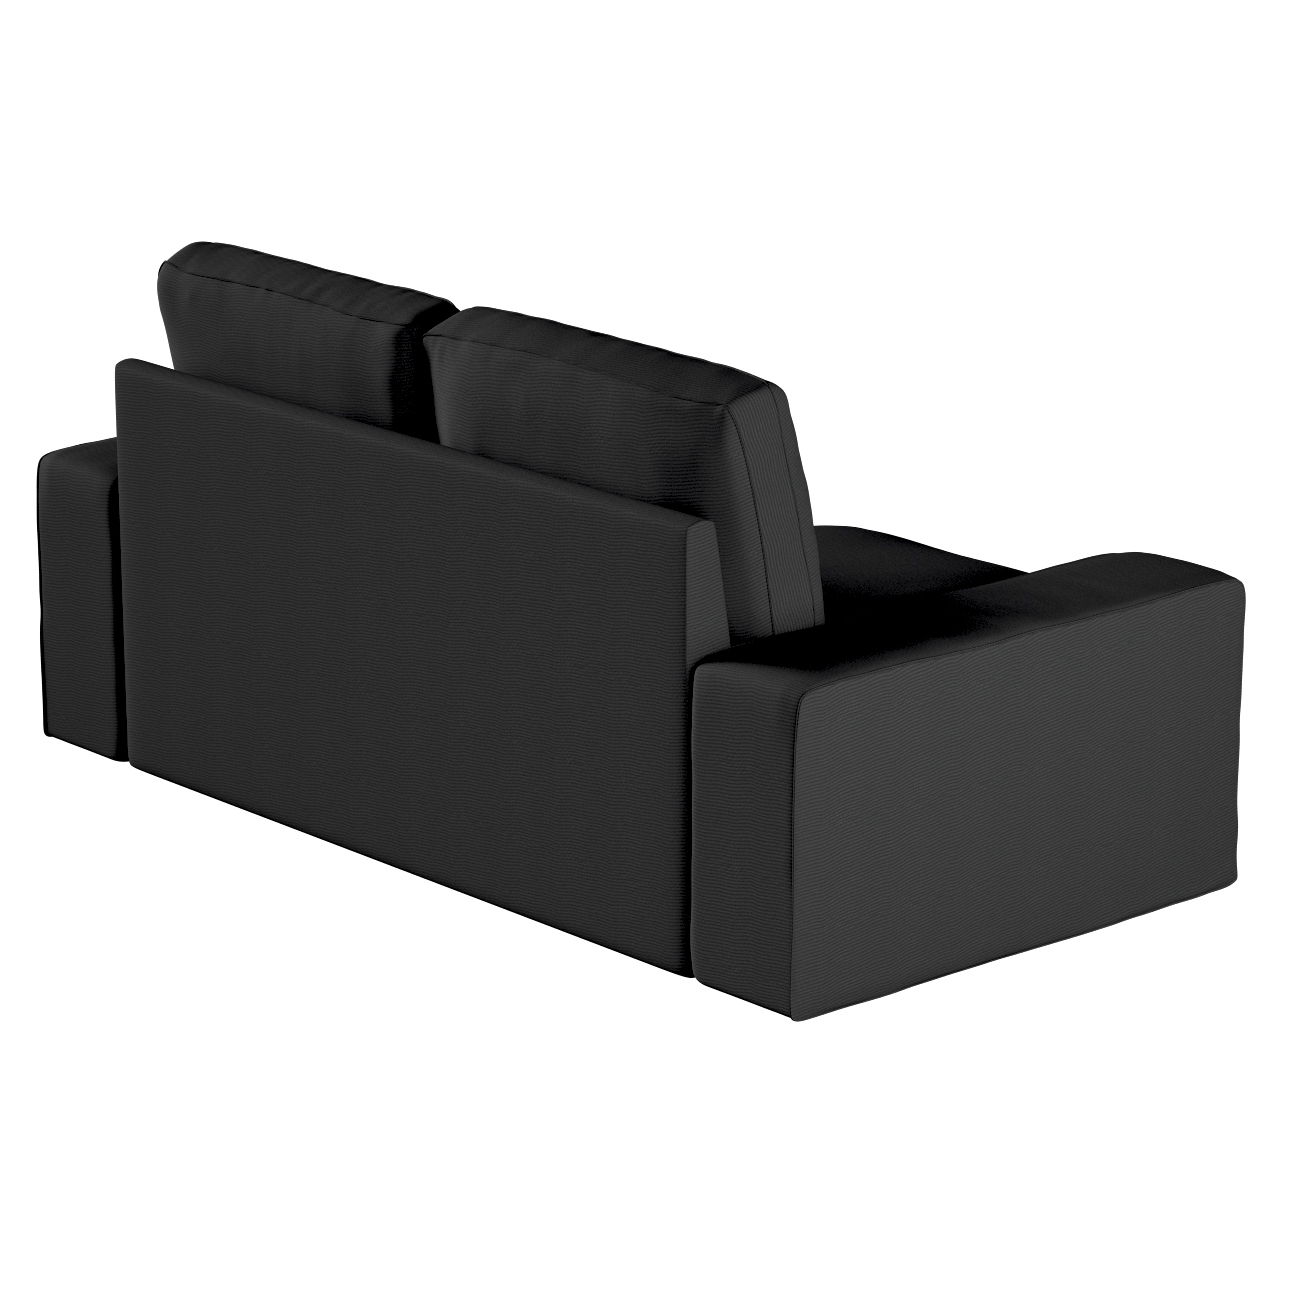 Bezug für Kivik 2-Sitzer Sofa, schwarz, Bezug für Sofa Kivik 2-Sitzer, Etna günstig online kaufen